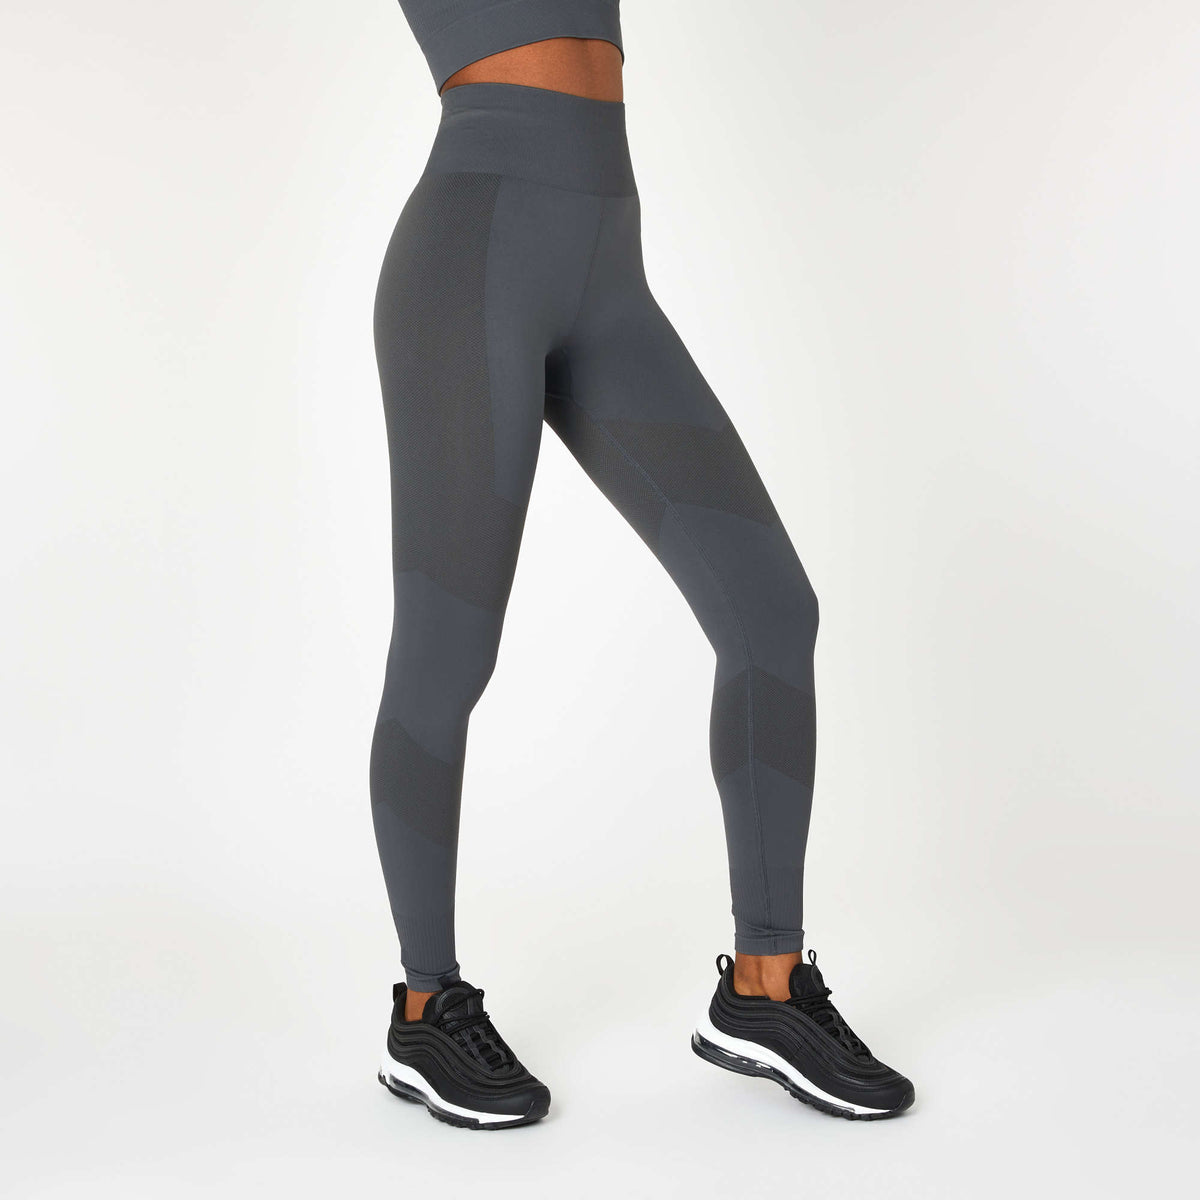 Gymshark Leggings  High Waisted Comfort & Flattering Design